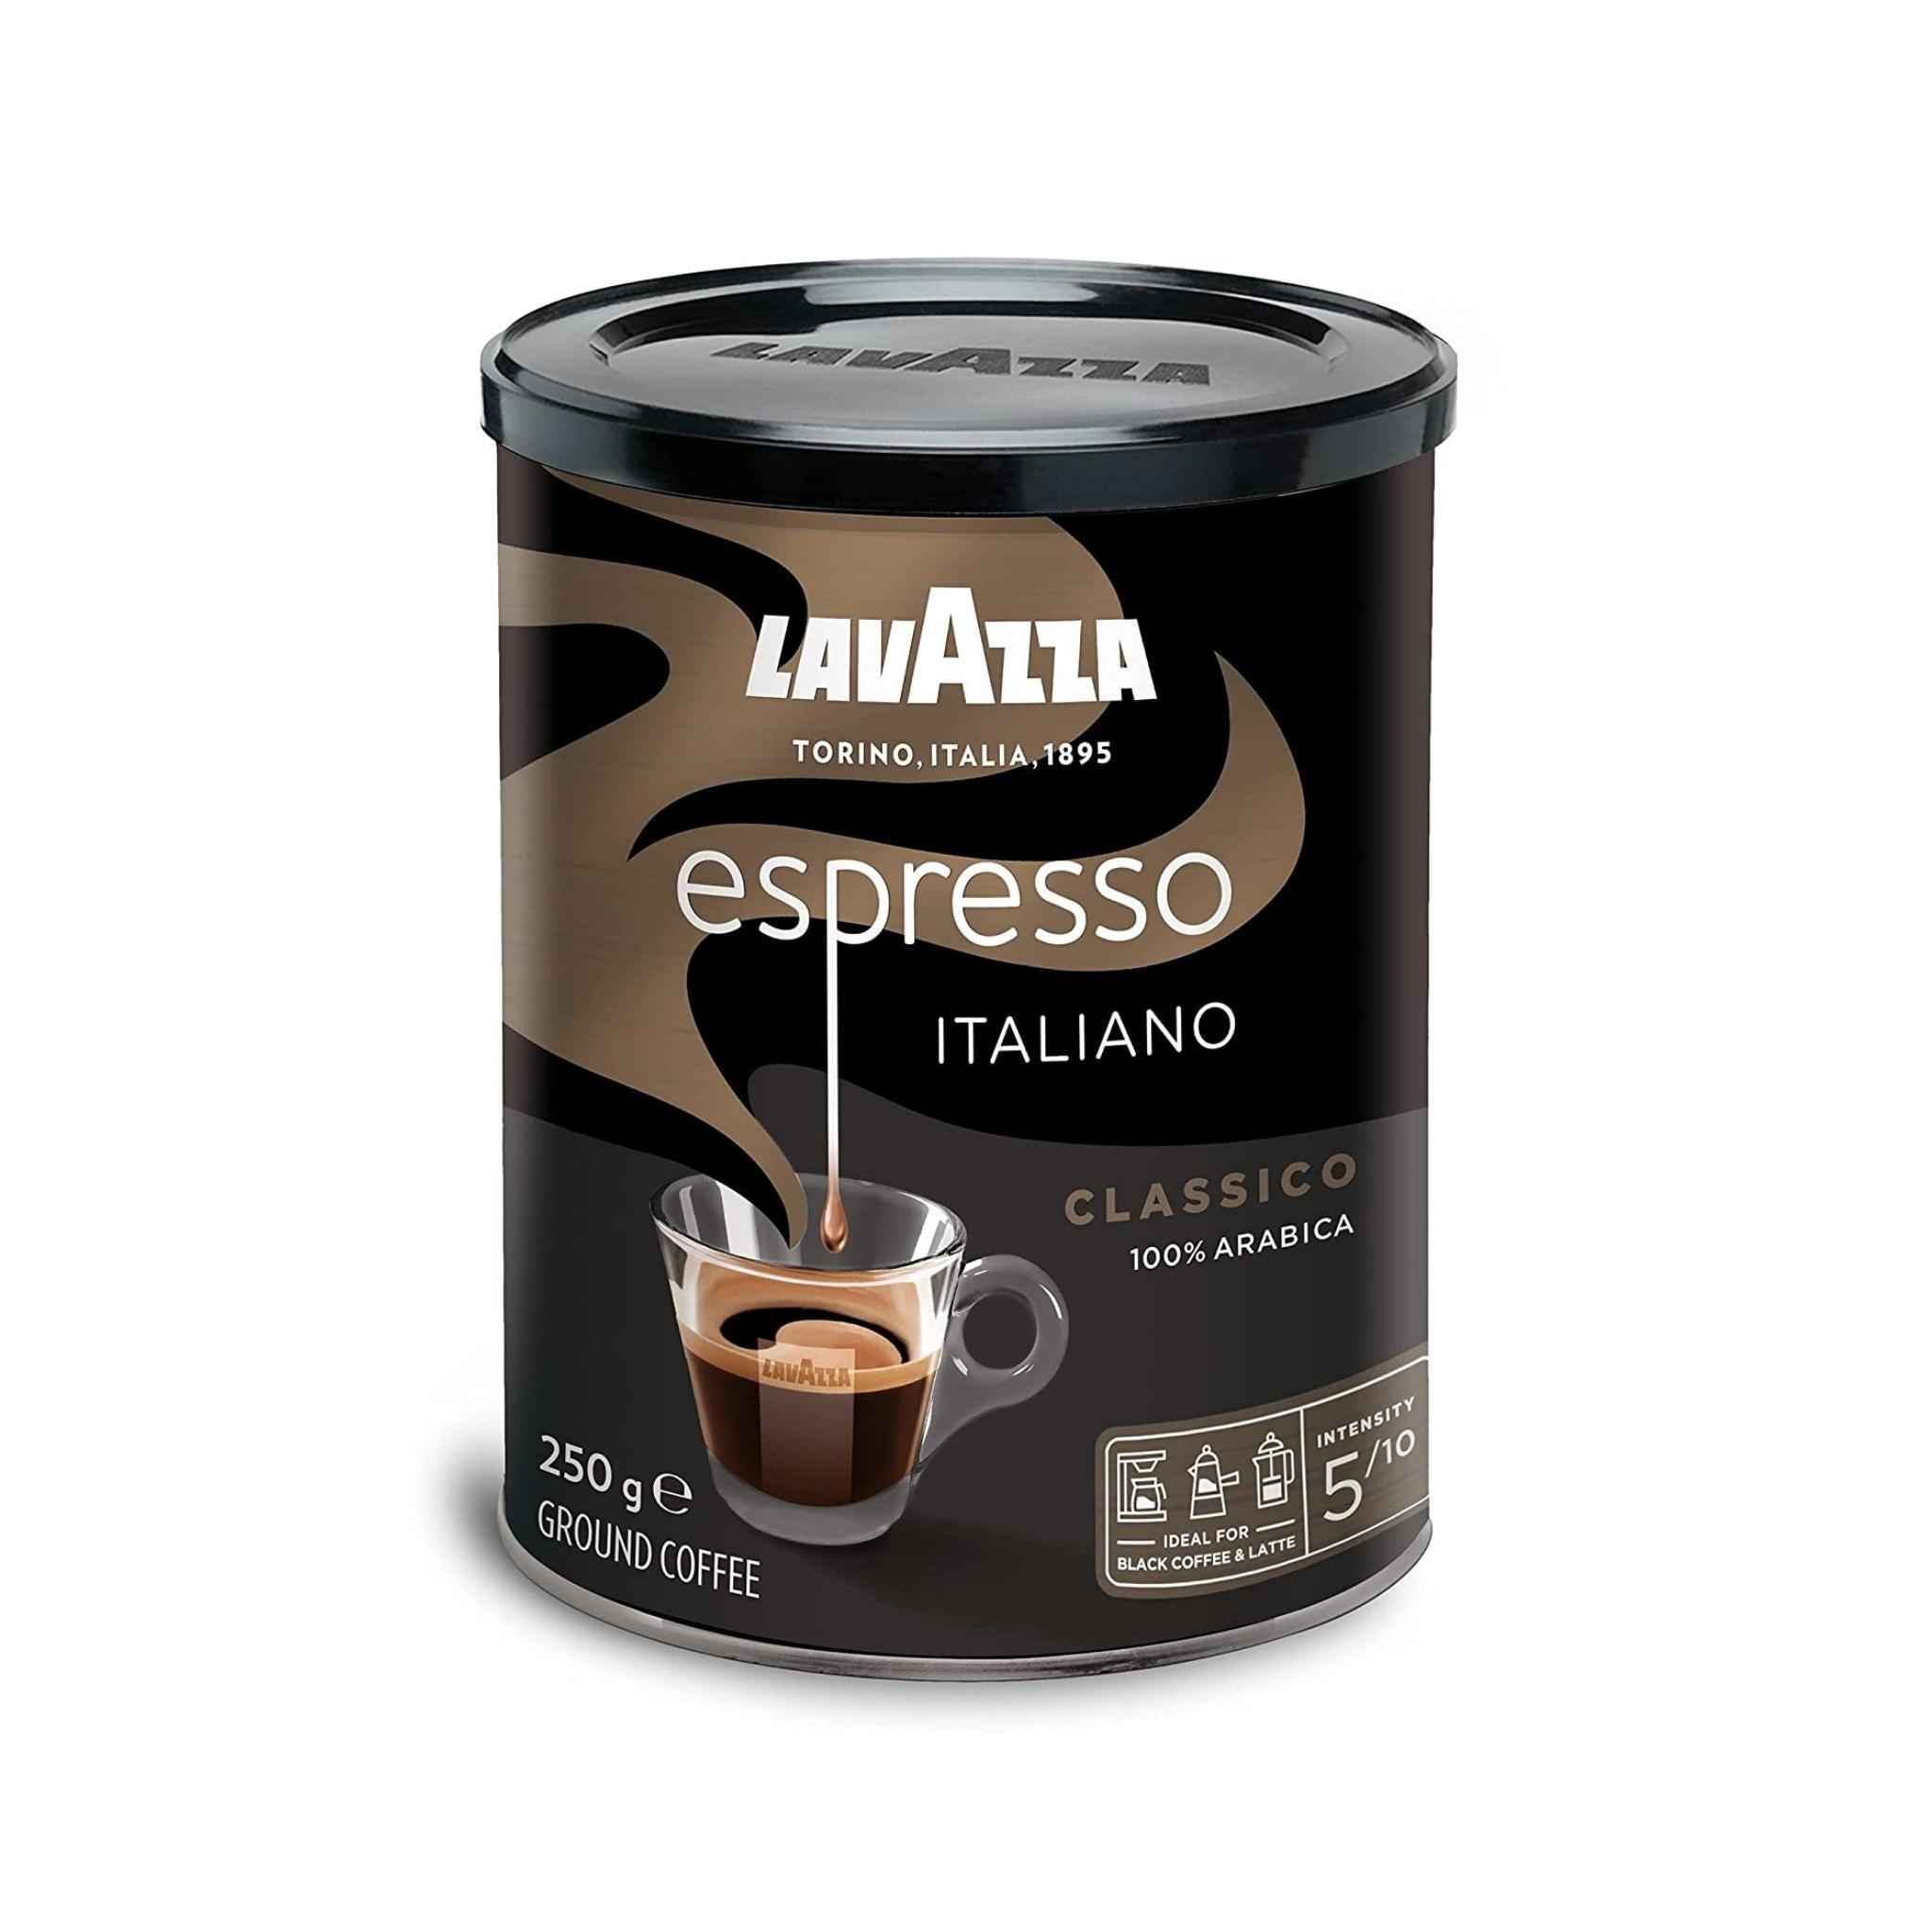 Lavazza Espresso Barista Perfetto – Whole Latte Love